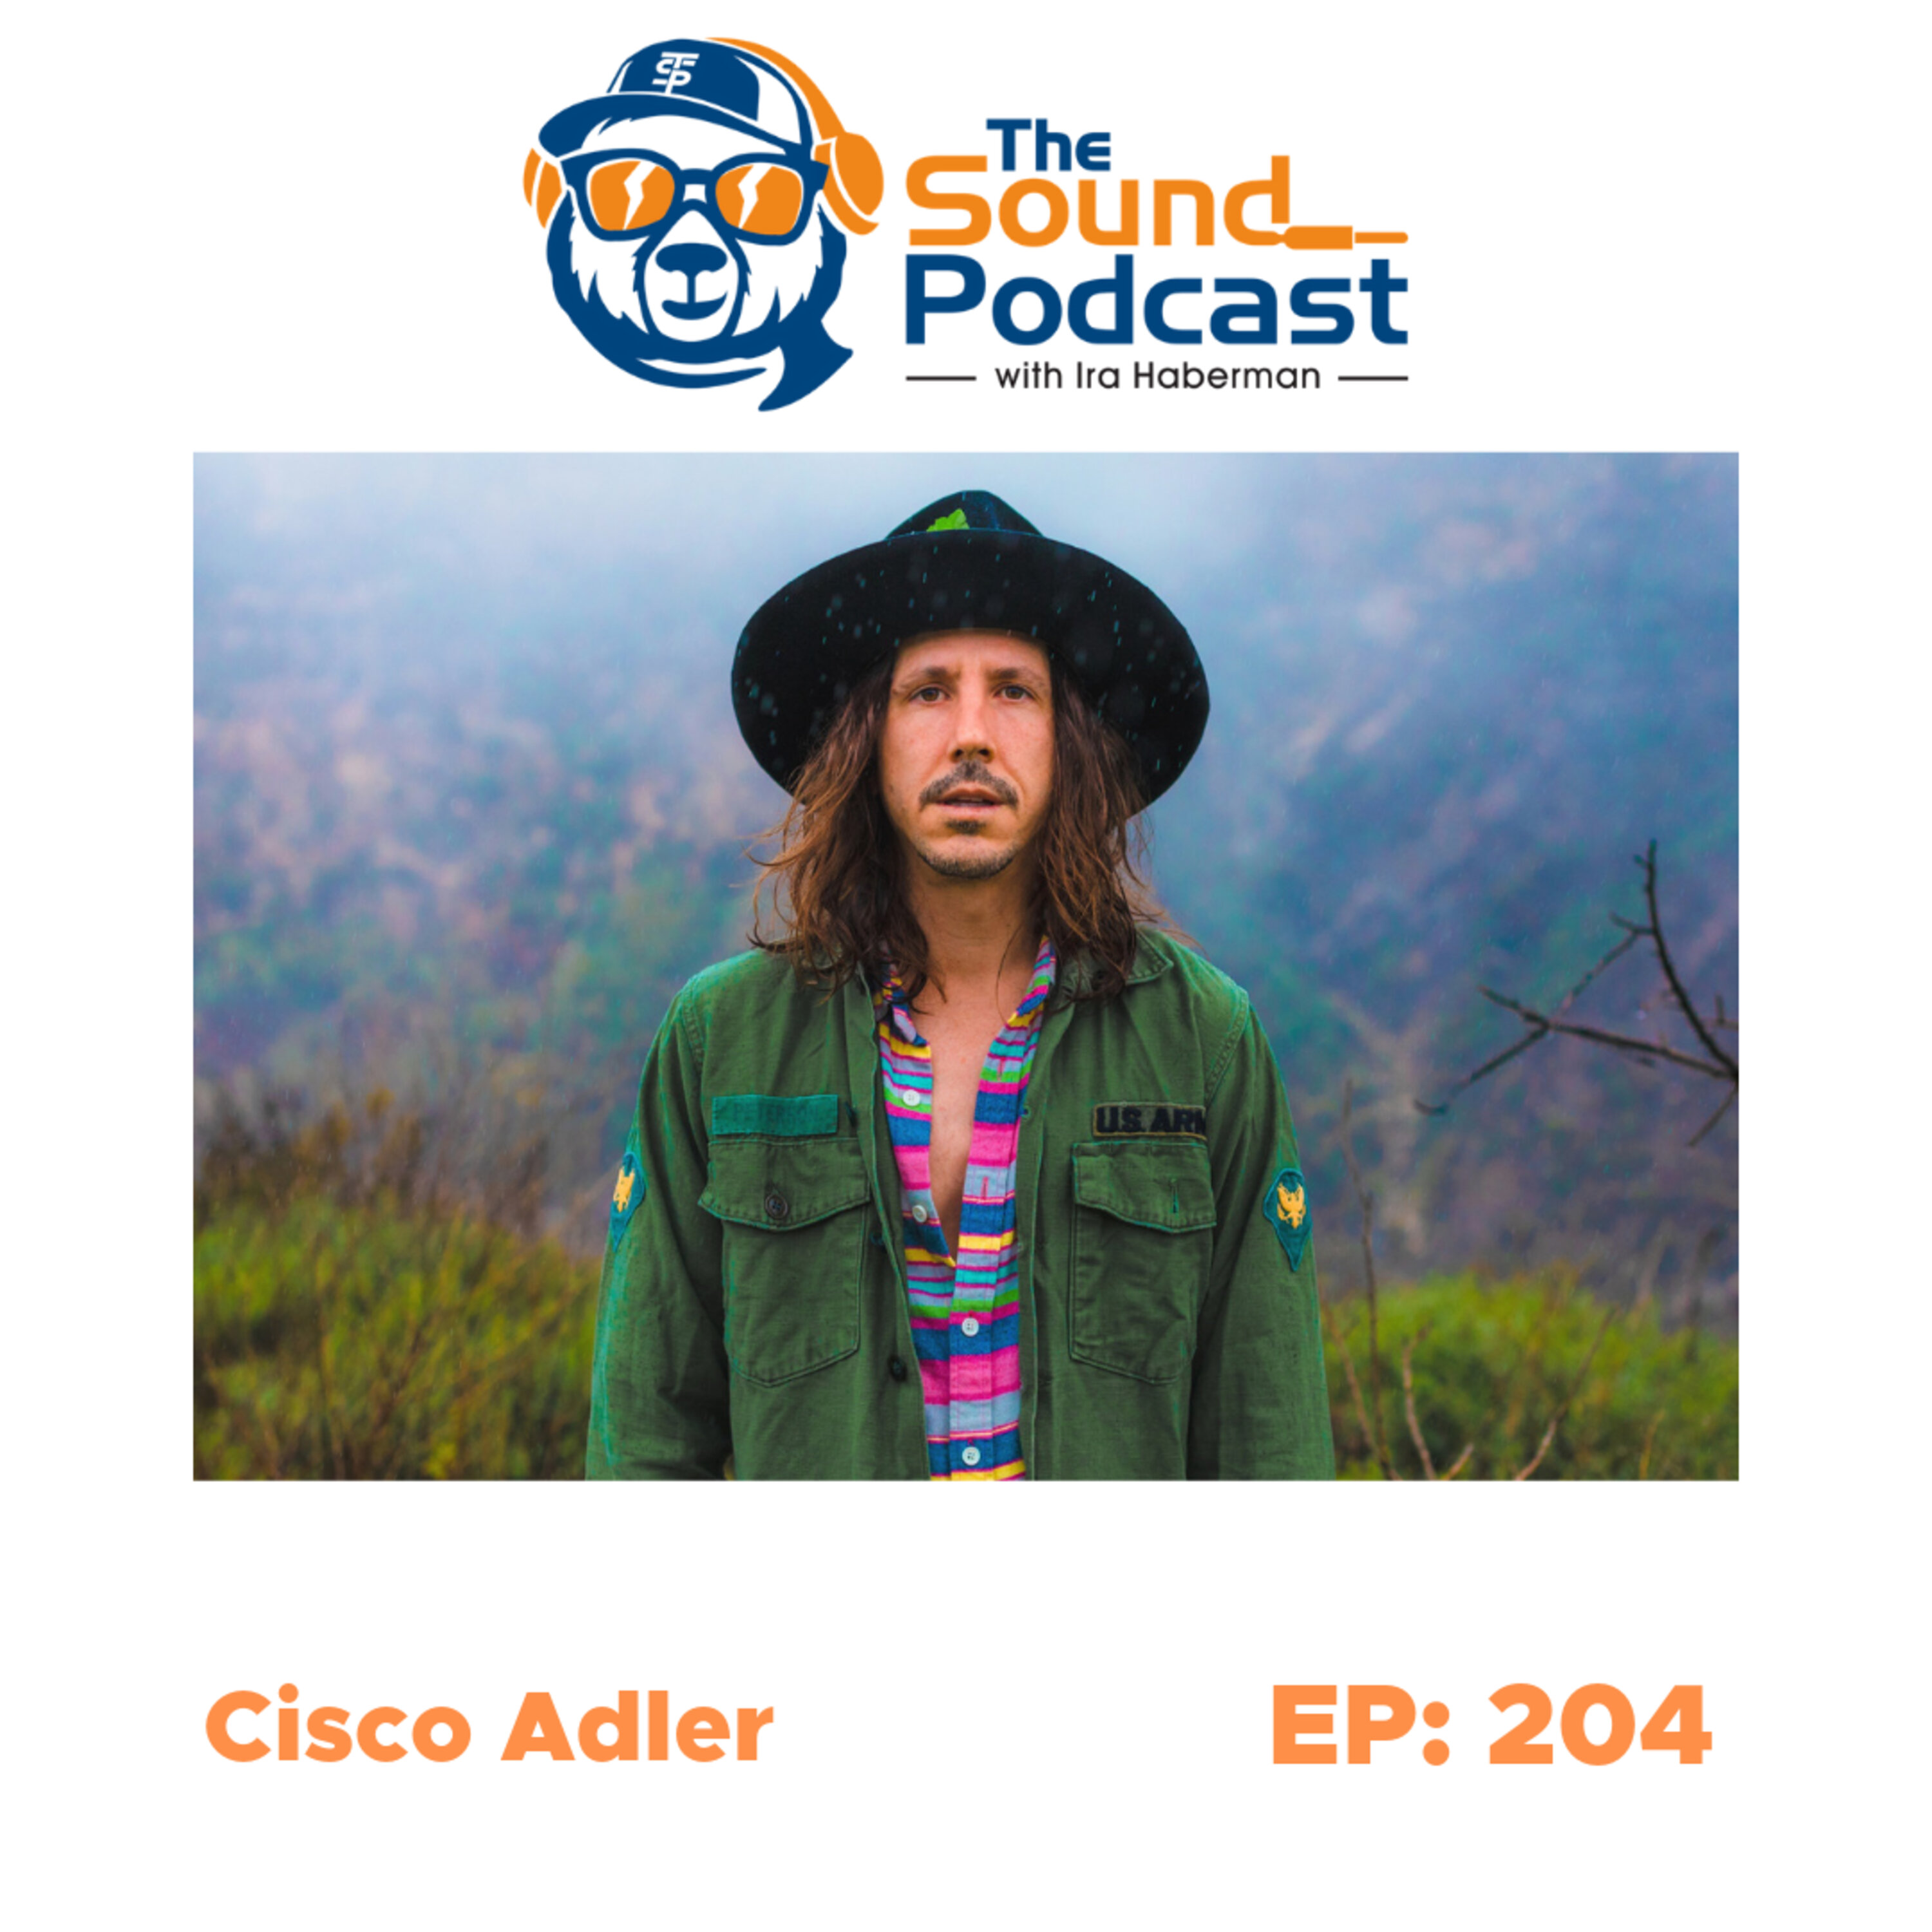 Cisco Adler